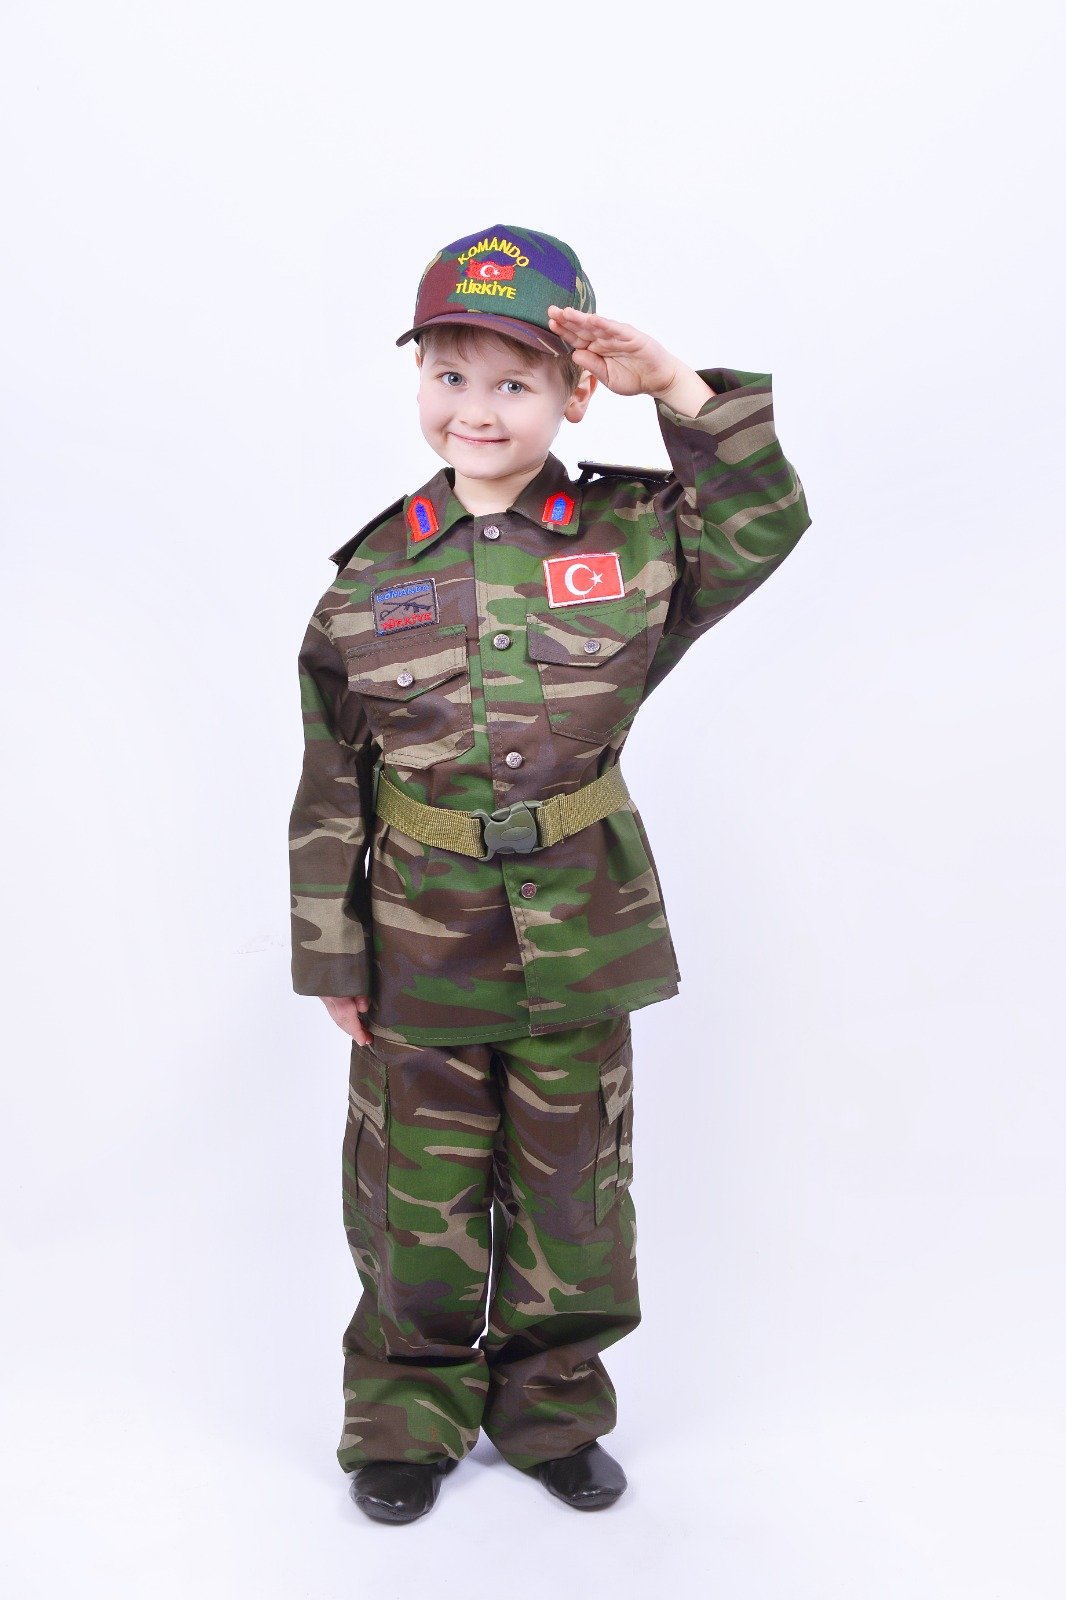 Çocuk Asker Kostümü, Asker Çocuk Kıyafet Seti, Asker Kamuflaj Kostüm Seti